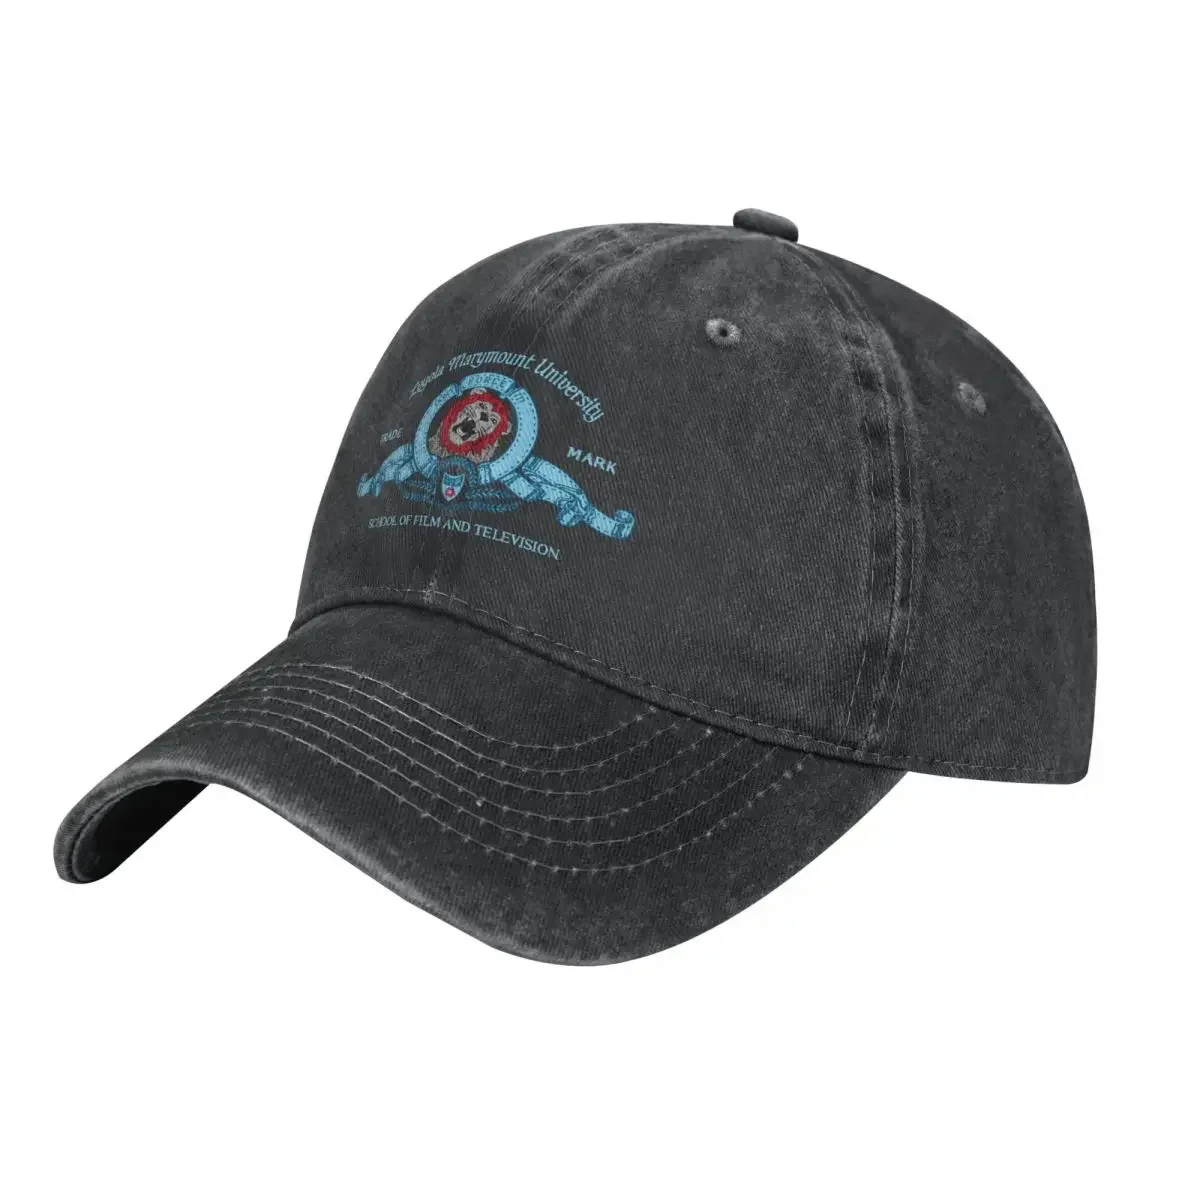 

LMU SFTV - Iggy the Lion (Light Font) Cowboy Hat Golf Hat Bobble Hat Snapback Cap Man For The Sun Caps For Women Men's